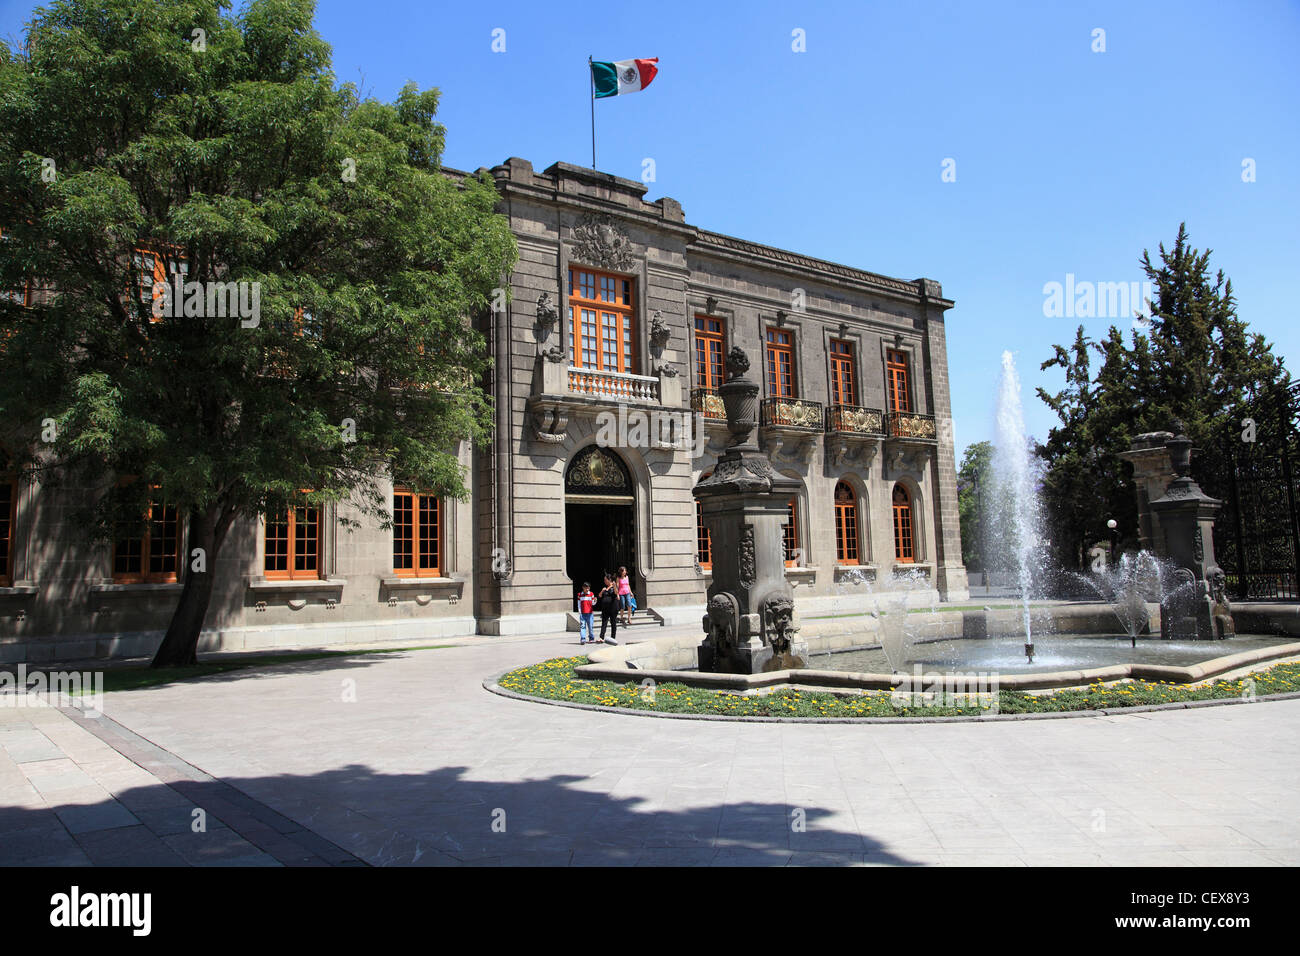 El Castillo de Chapultepec, château de Chapultepec, le parc de Chapultepec, Chapultepec, Mexico City, Mexico Banque D'Images